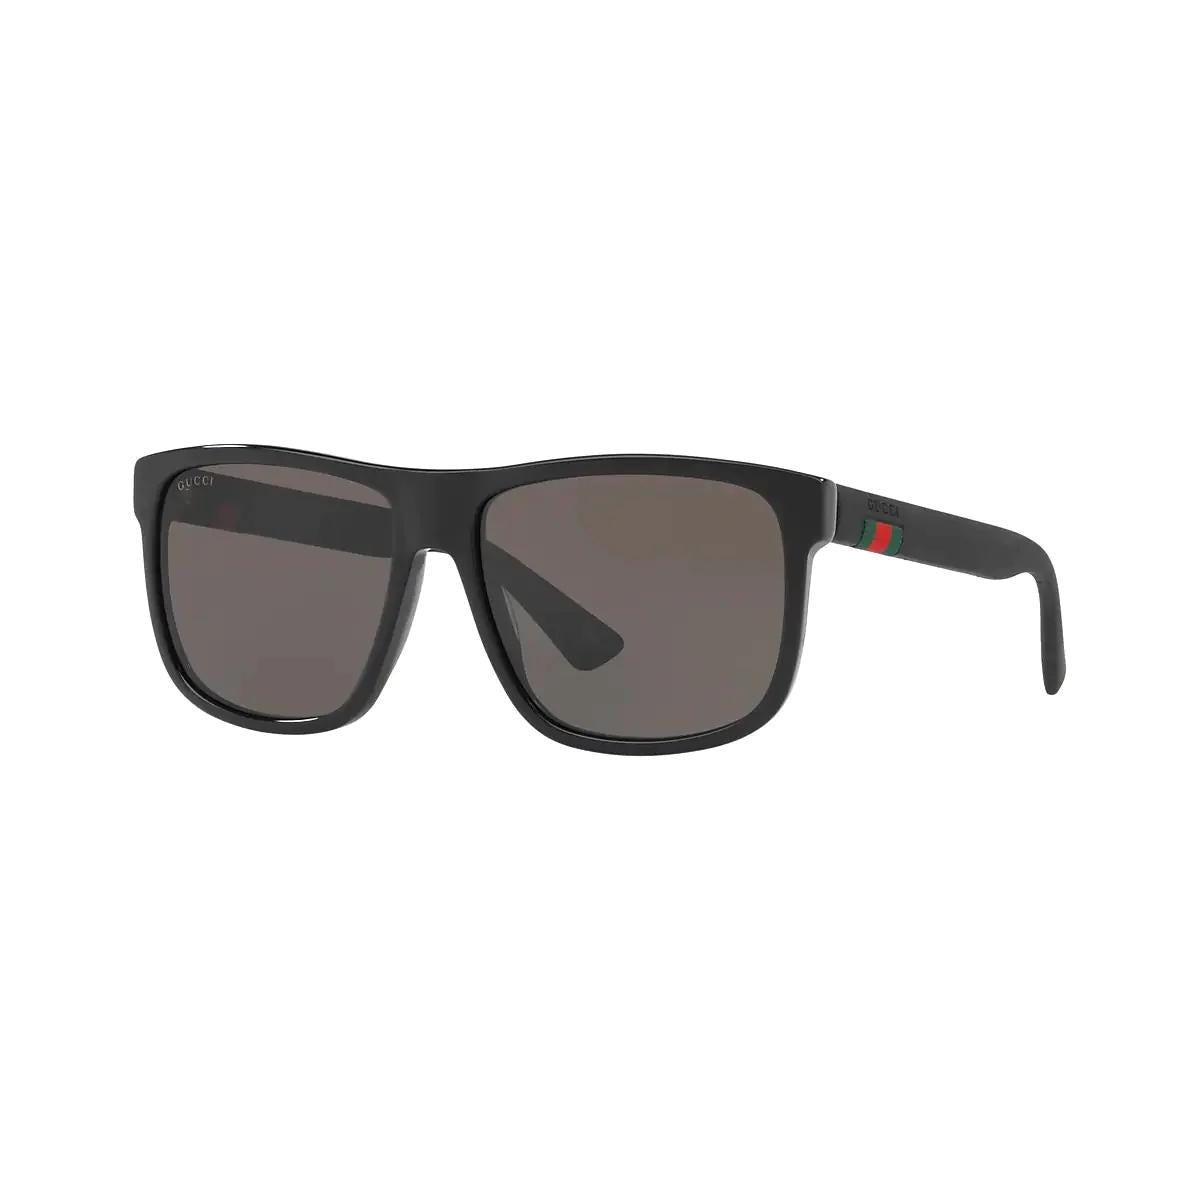 Gucci GUC-GG0010S-001 Sunglasses